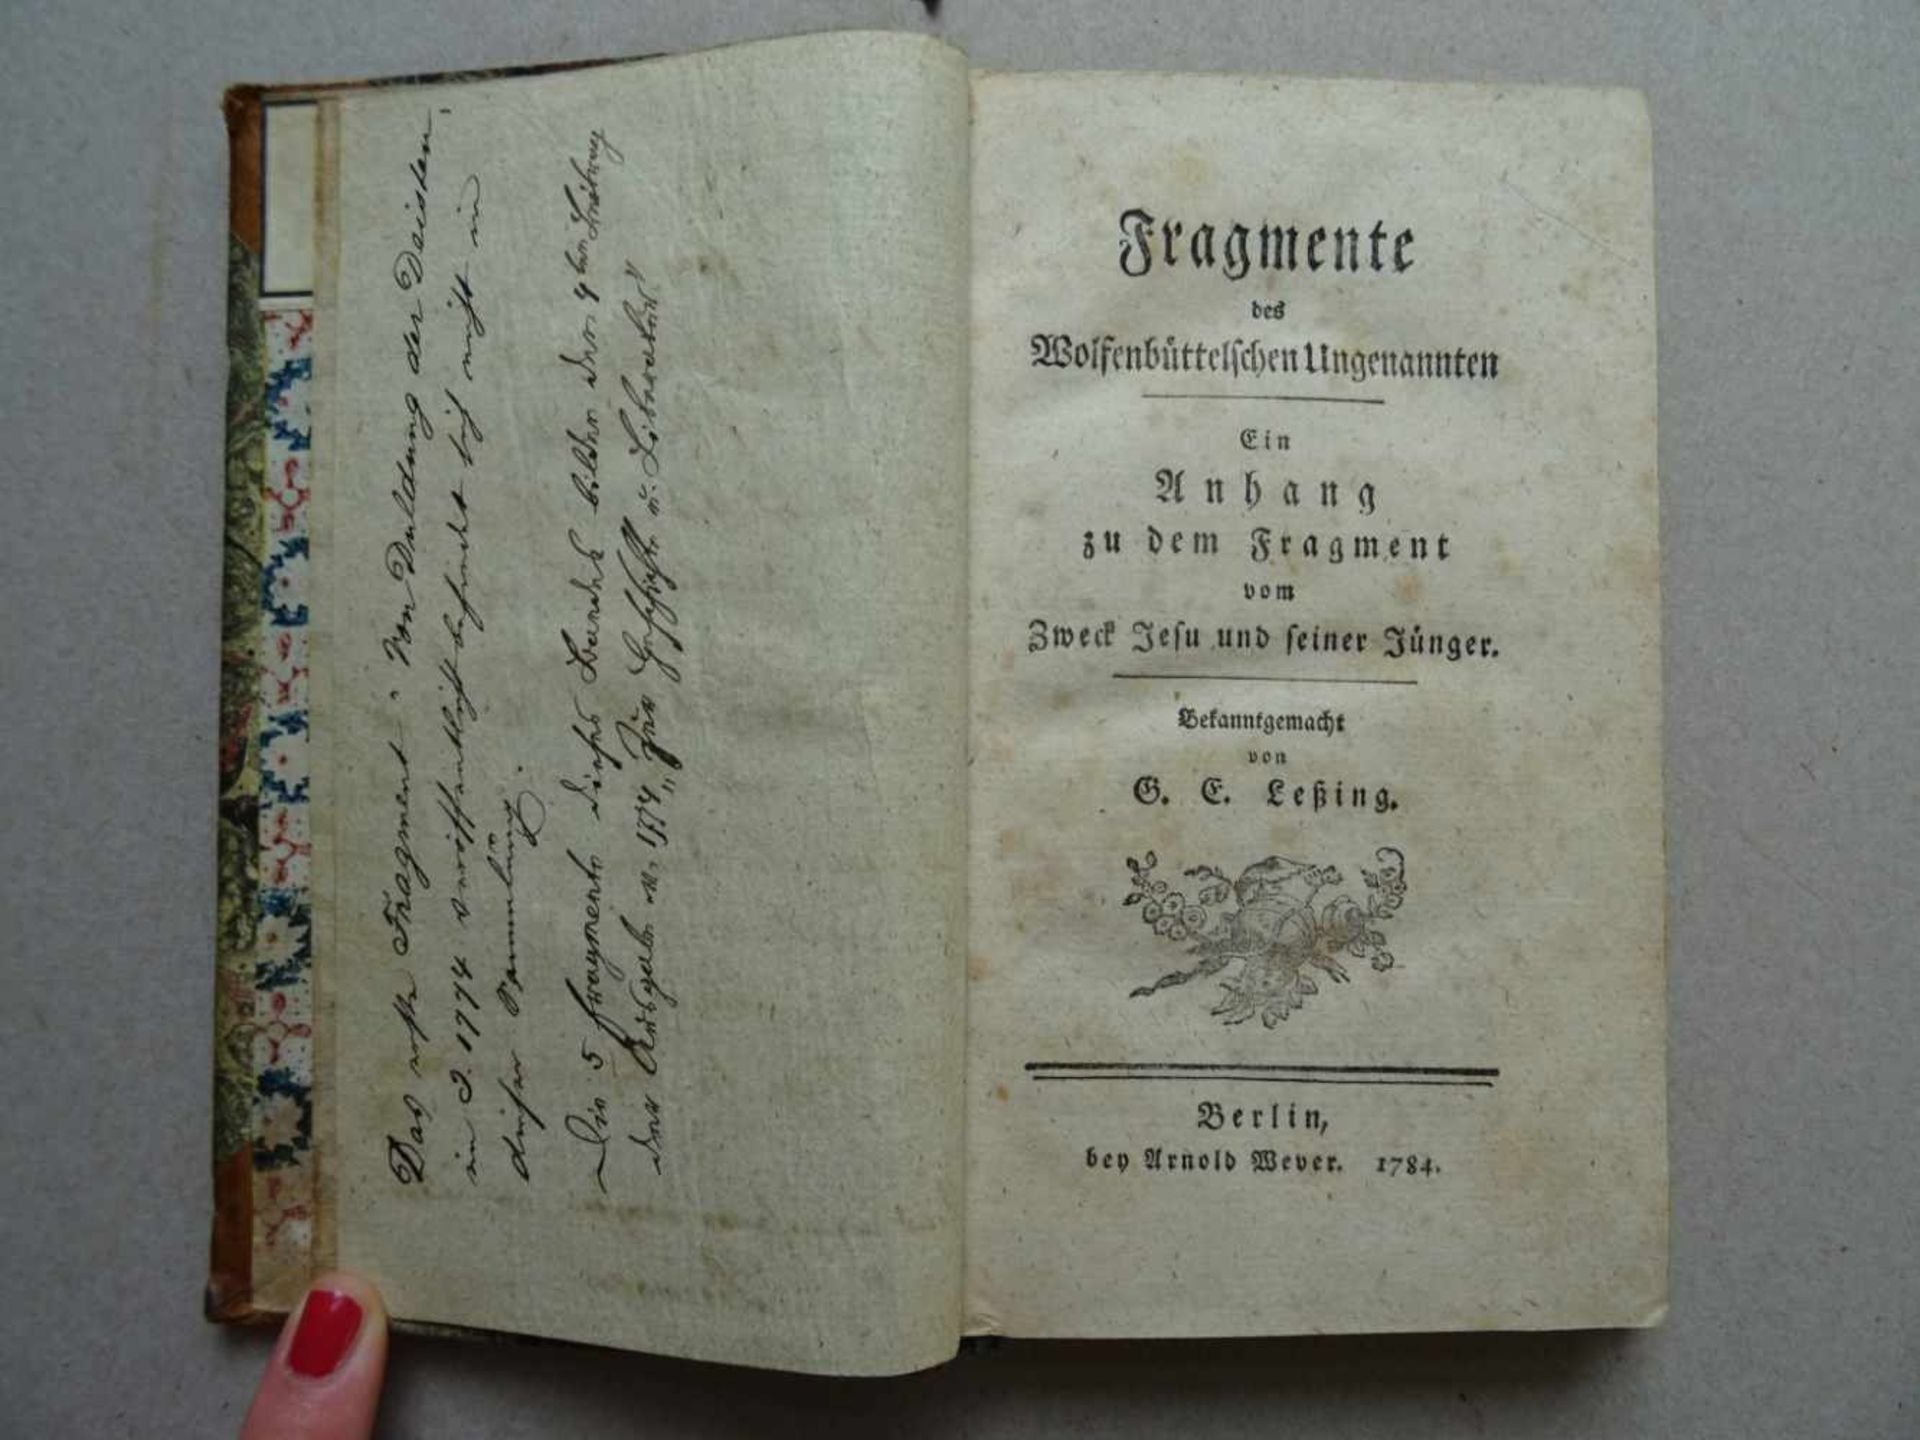 (Reimarus, H.S.).Fragmente des Wolfenbüttelschen Ungenannten. Ein Anhang zu dem Fragment vom Zweck